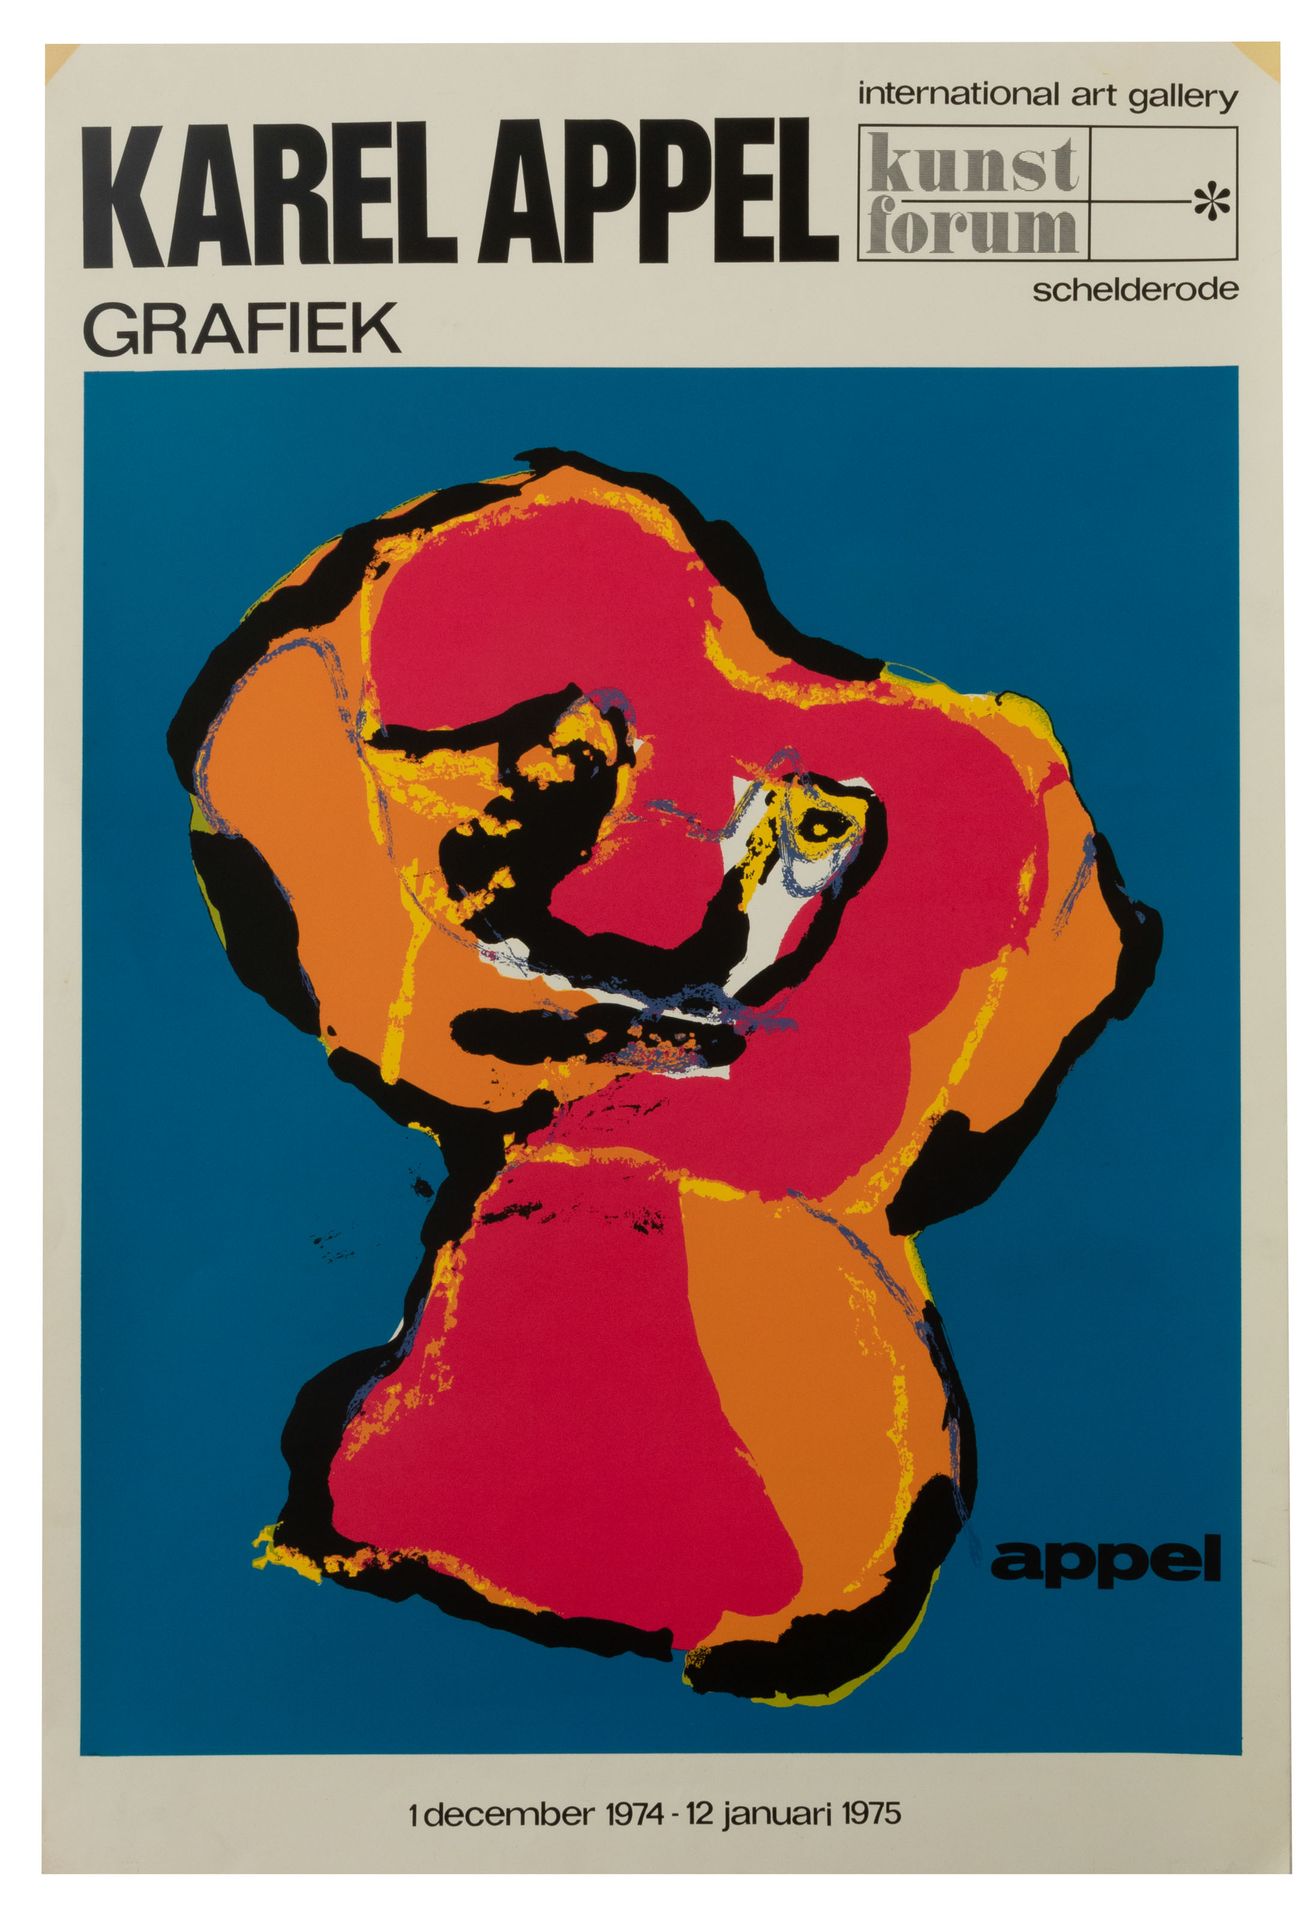 KAREL APPEL (1921-2006) 'Karel Appel Grafiek'. Ausstellungsplakat, Schelderode, &hellip;